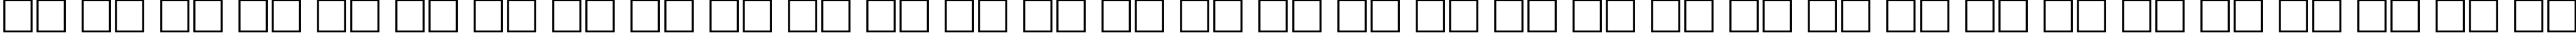 Пример написания русского алфавита шрифтом PentaDemi